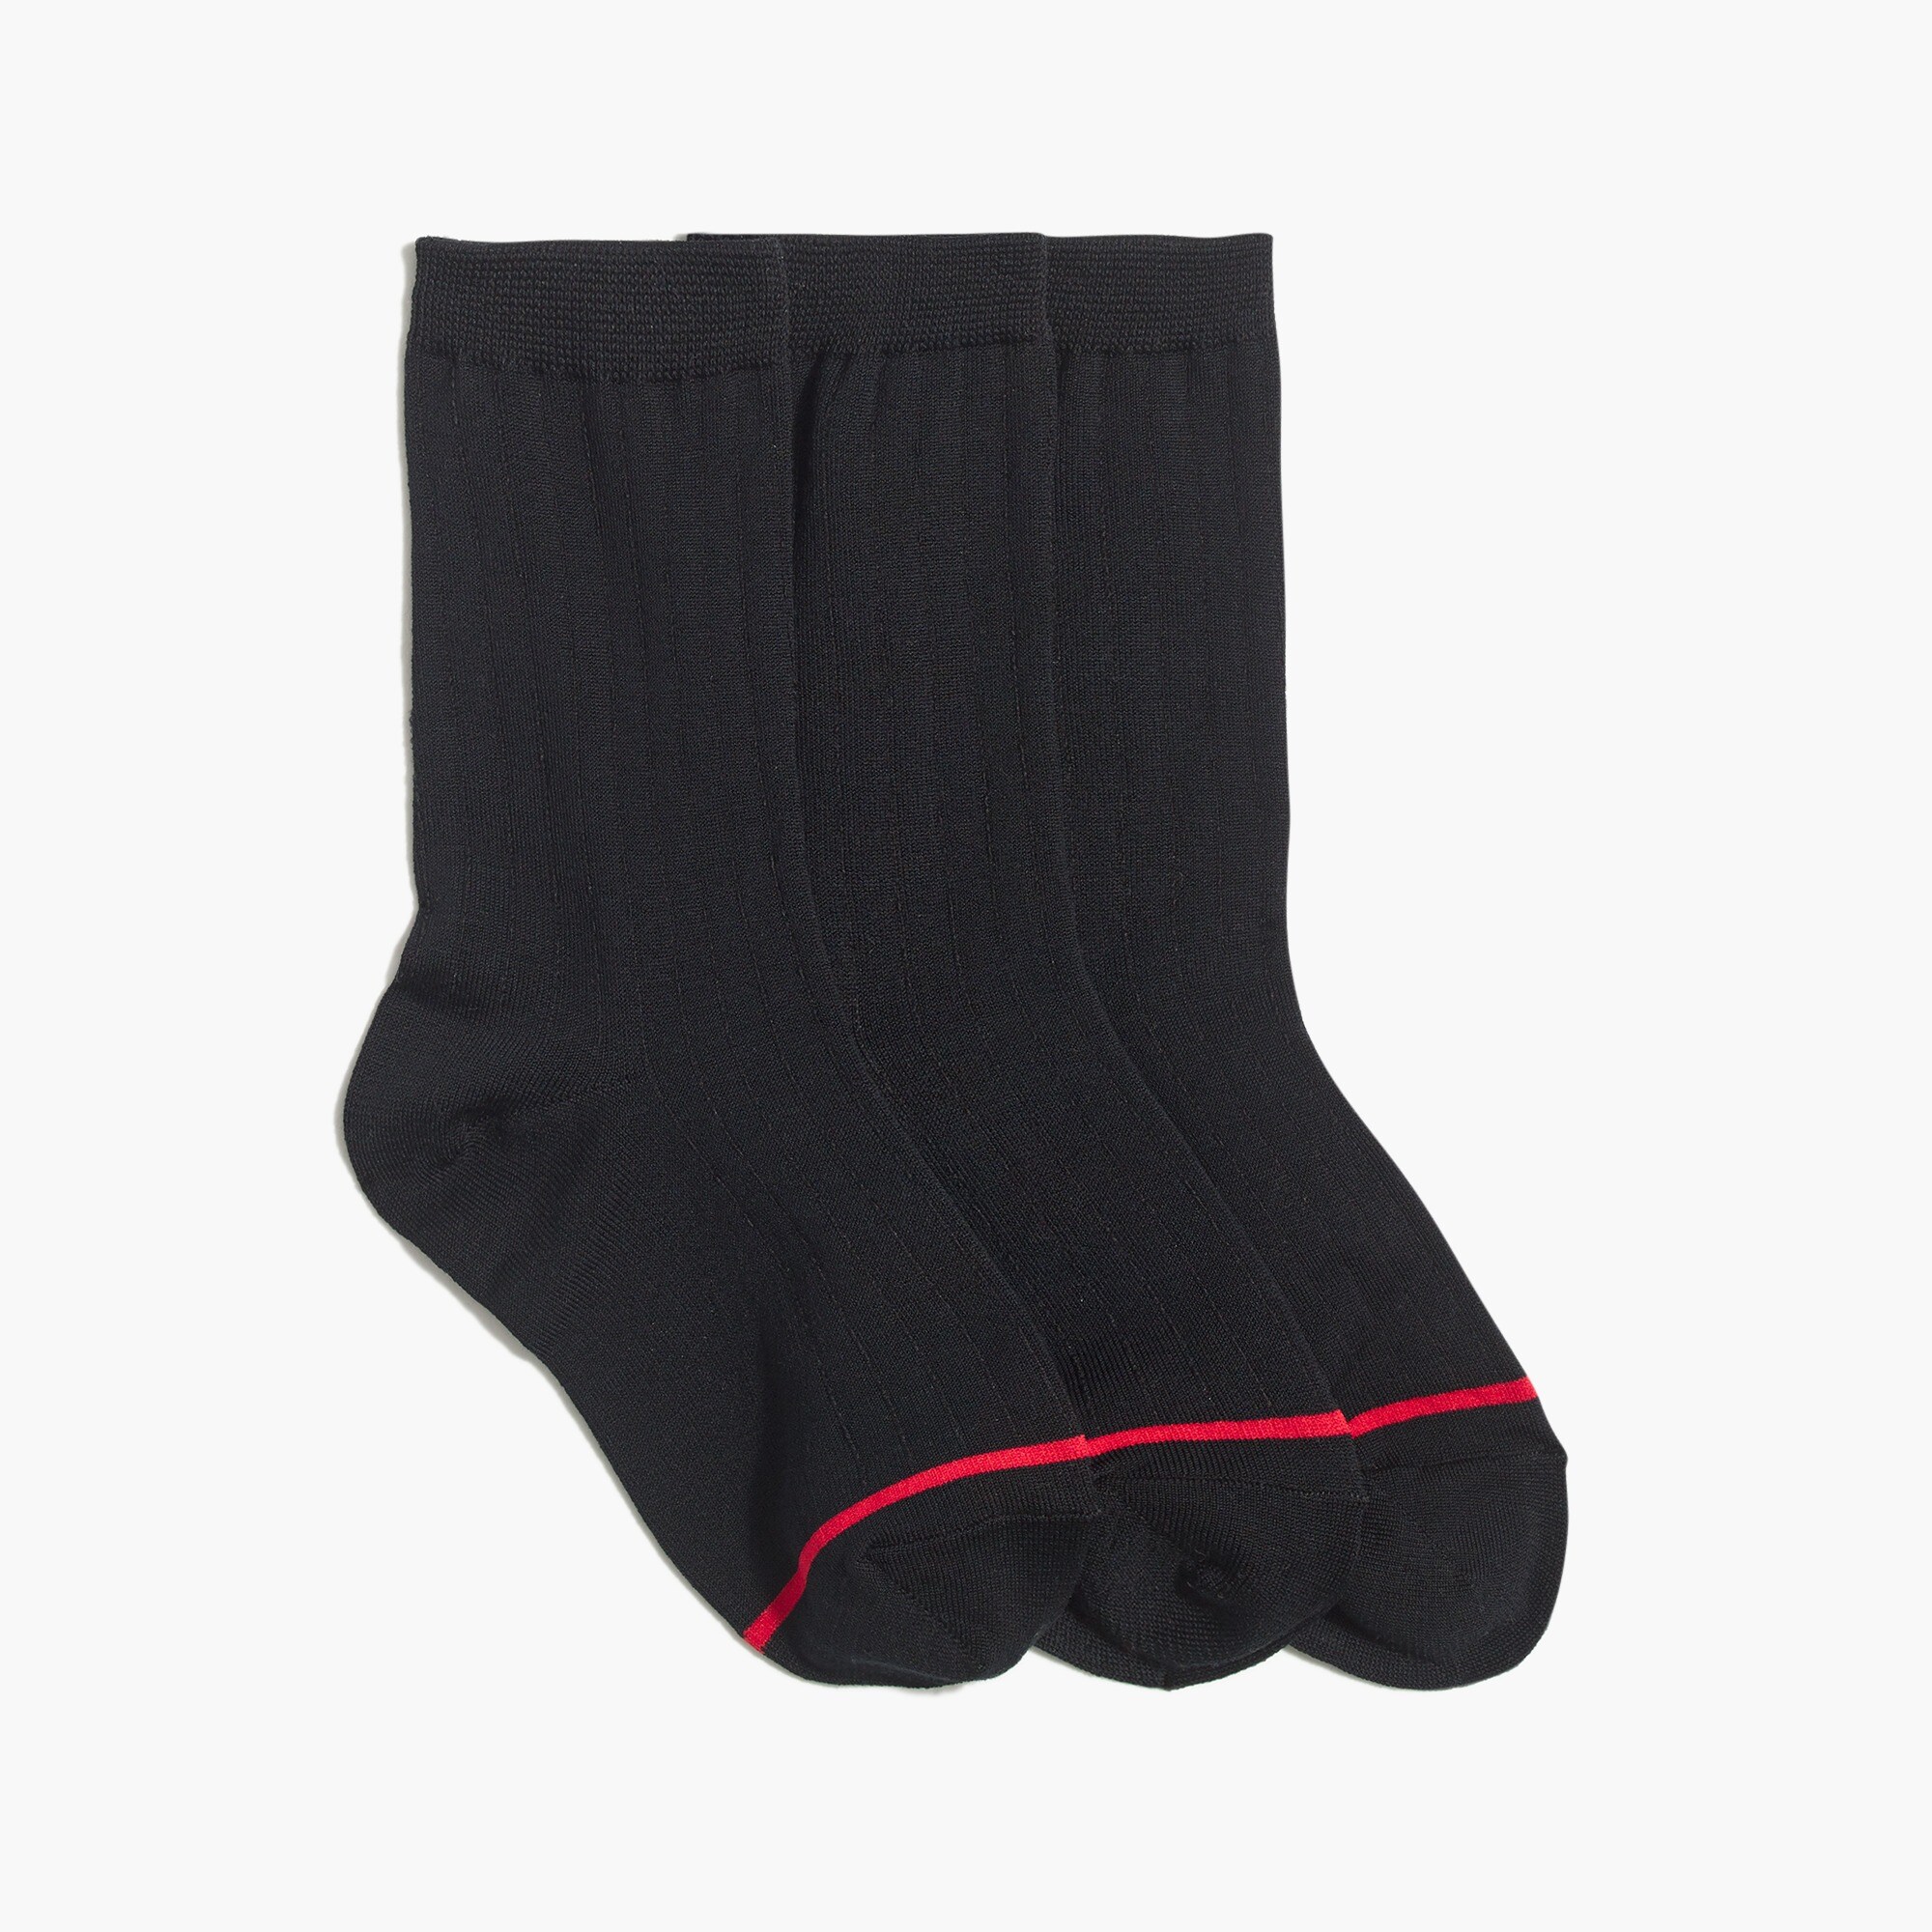  Boys' dress socks three-pack